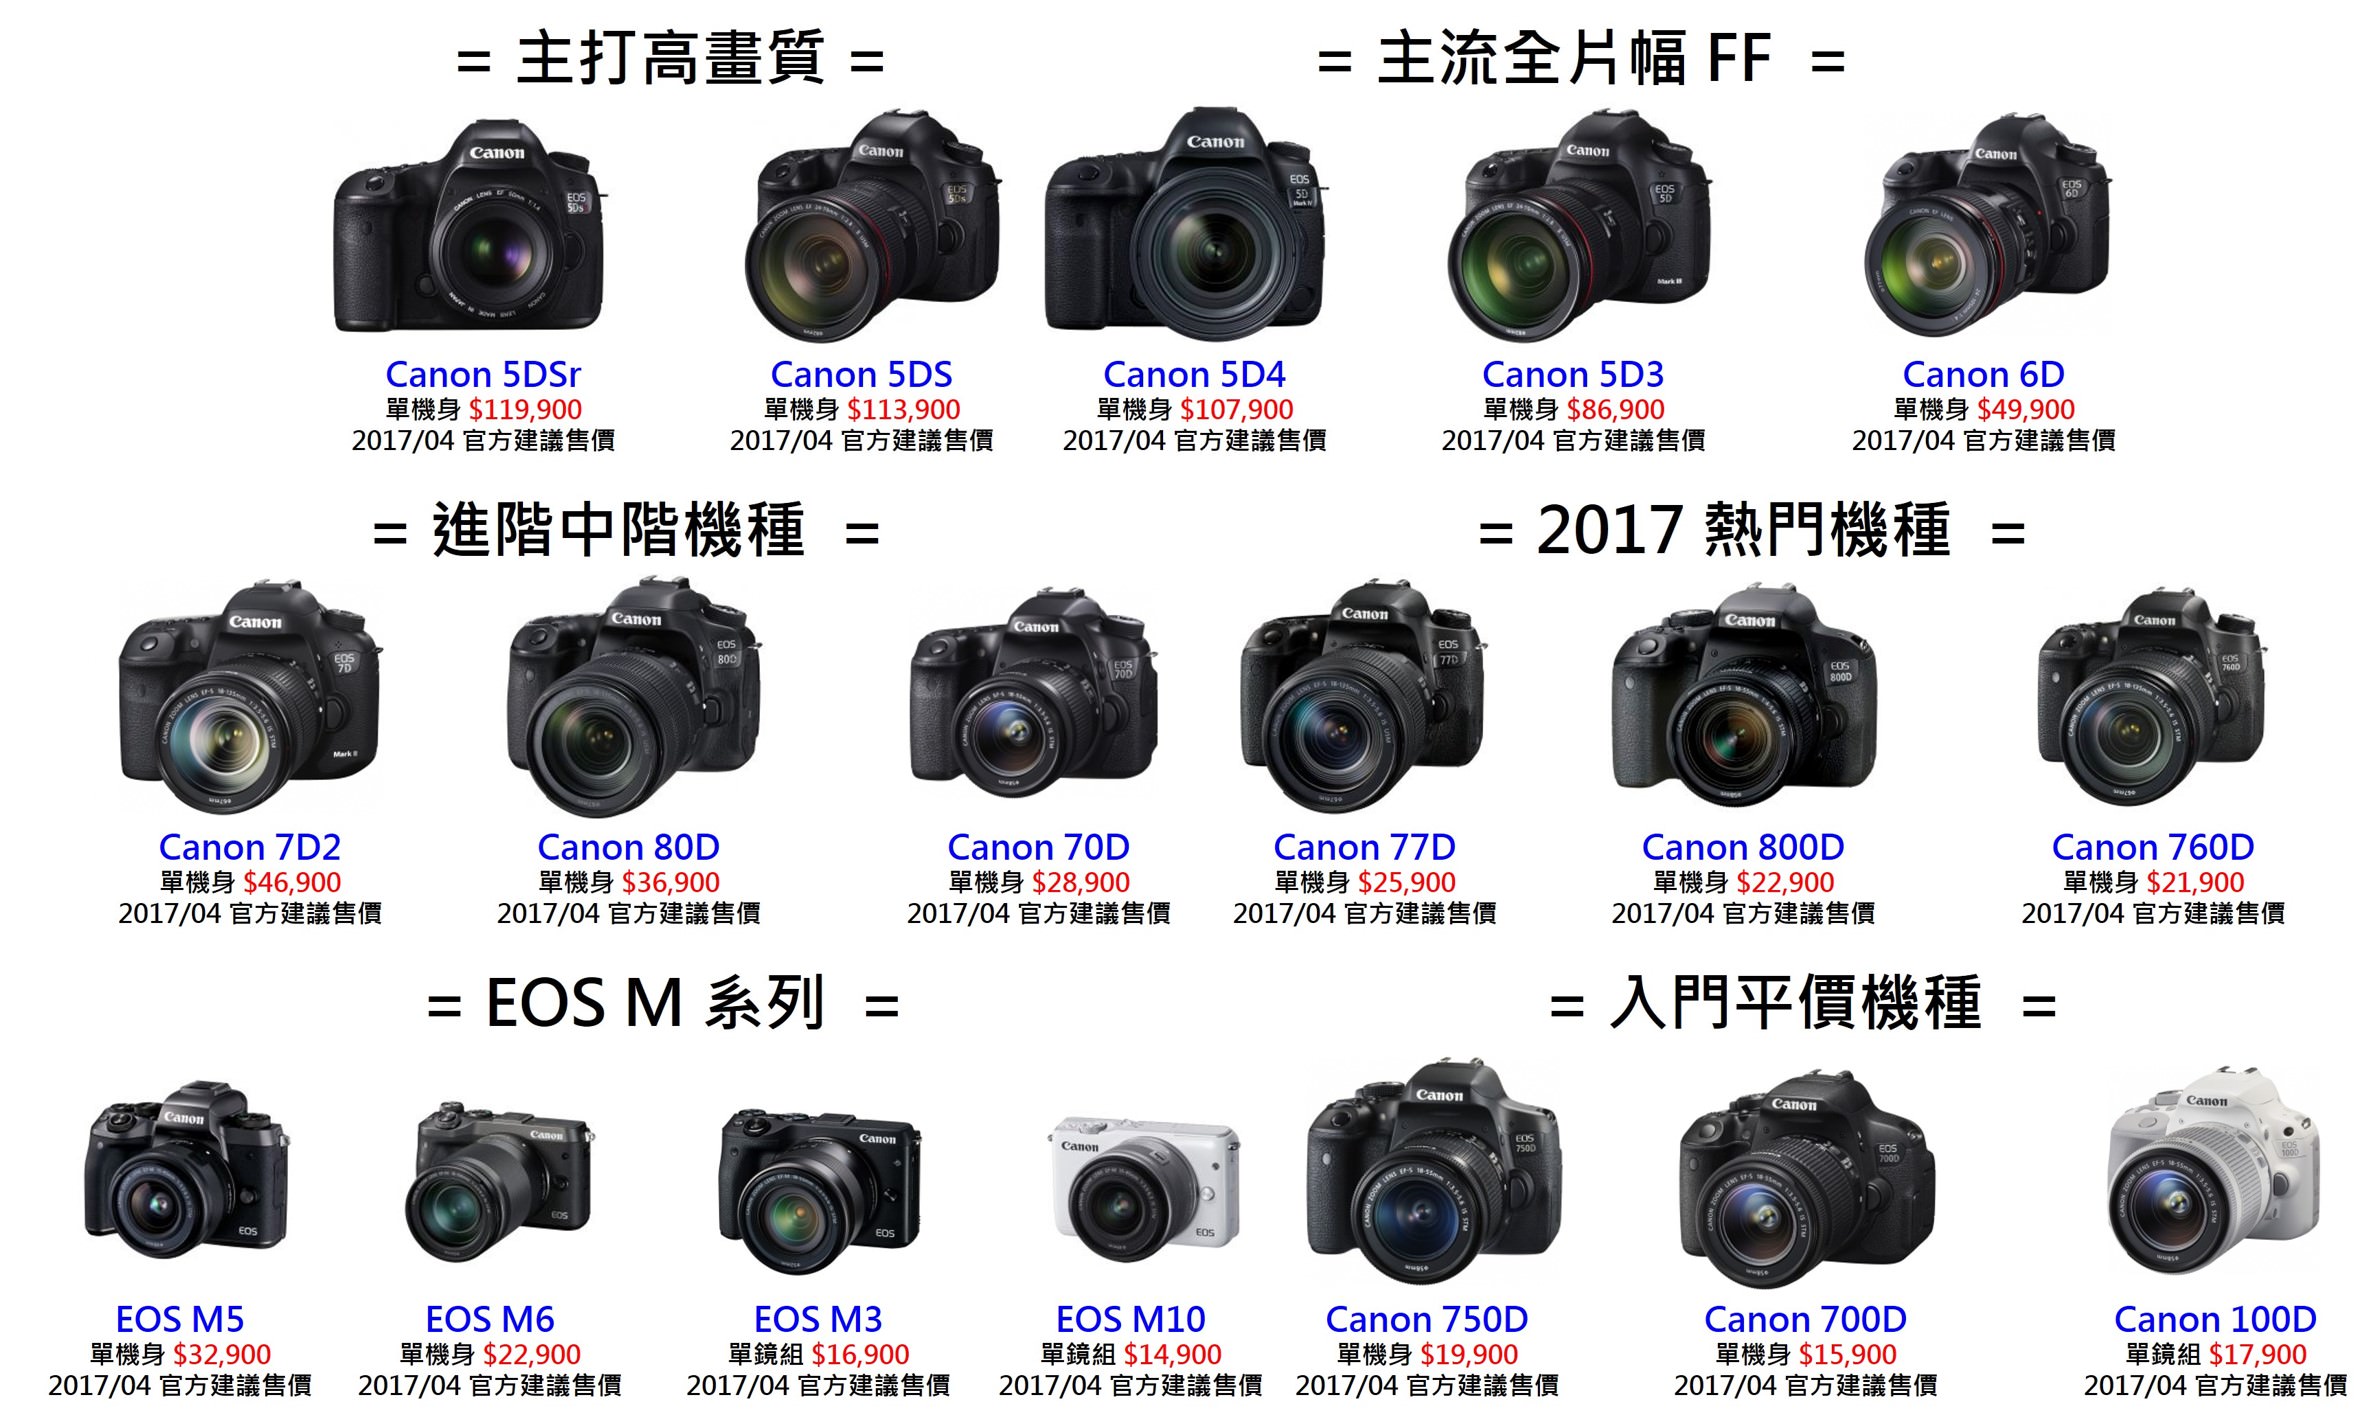 [聊攝影184] Canon 相機推薦 全系列機種比較整理 & 採購指南 , Canon 5D4 至 EOS M6 全比較